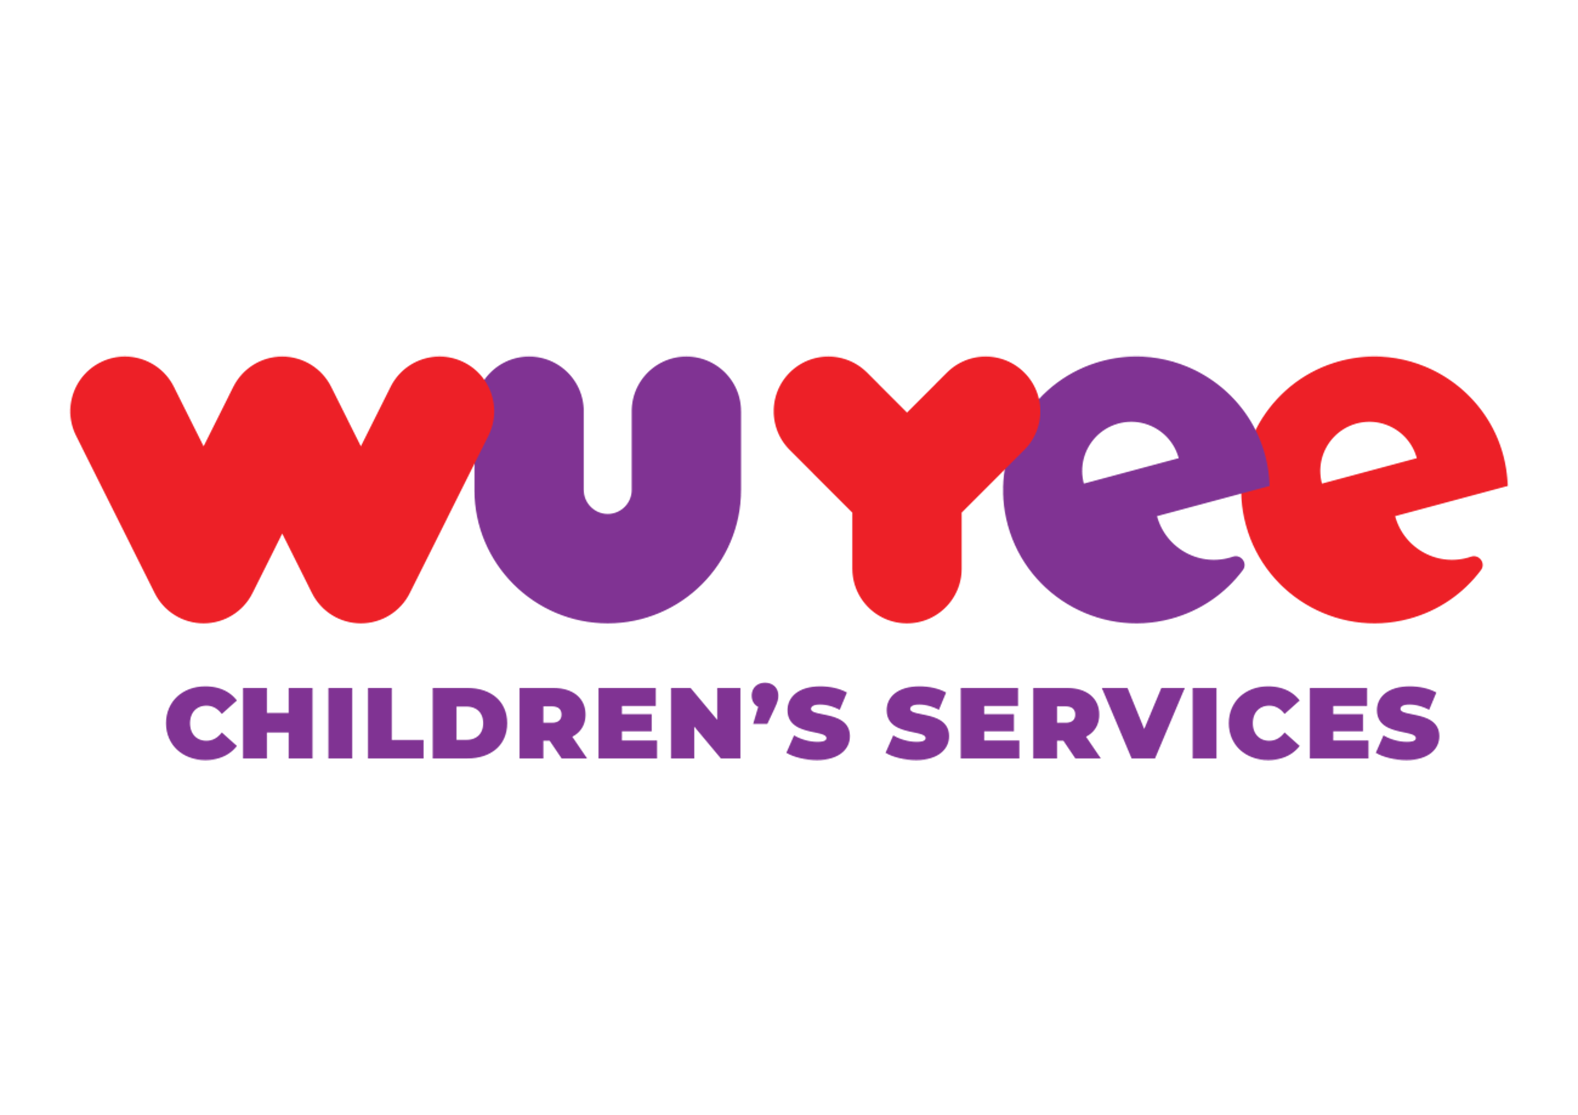 Servicios para niños de Wu Yee